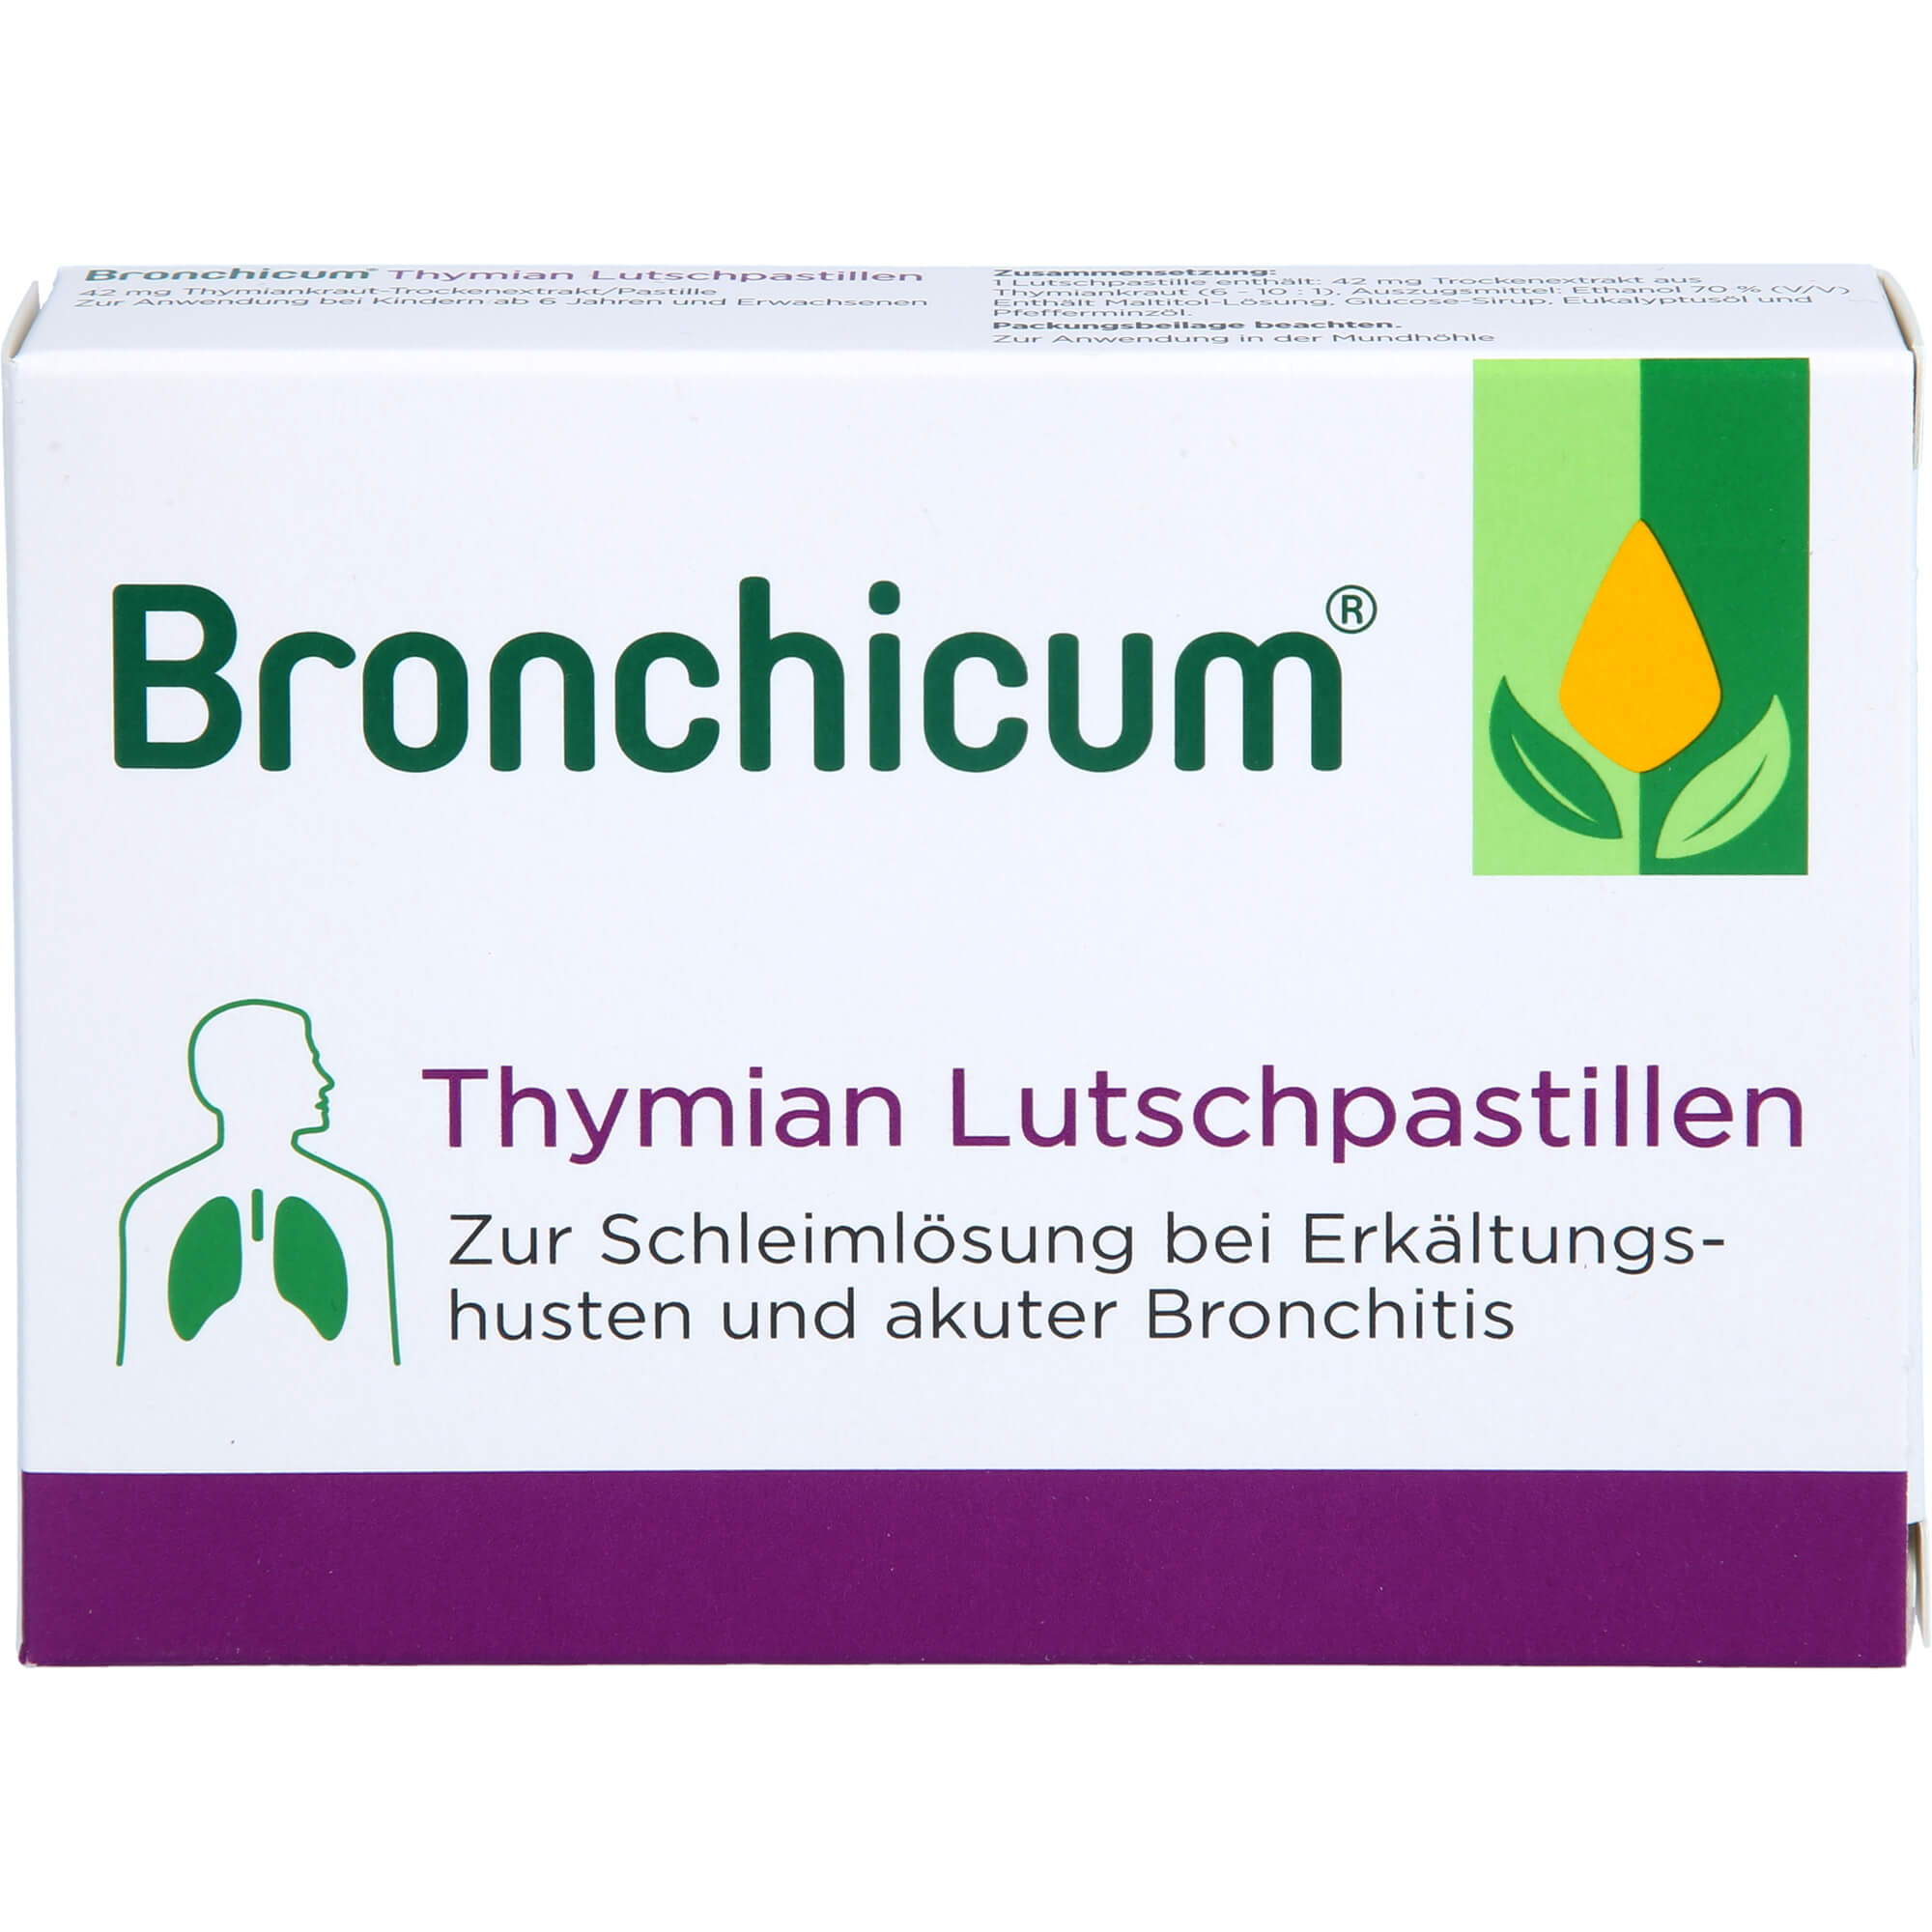 BRONCHICUM-Thymian-Lutschpastillen